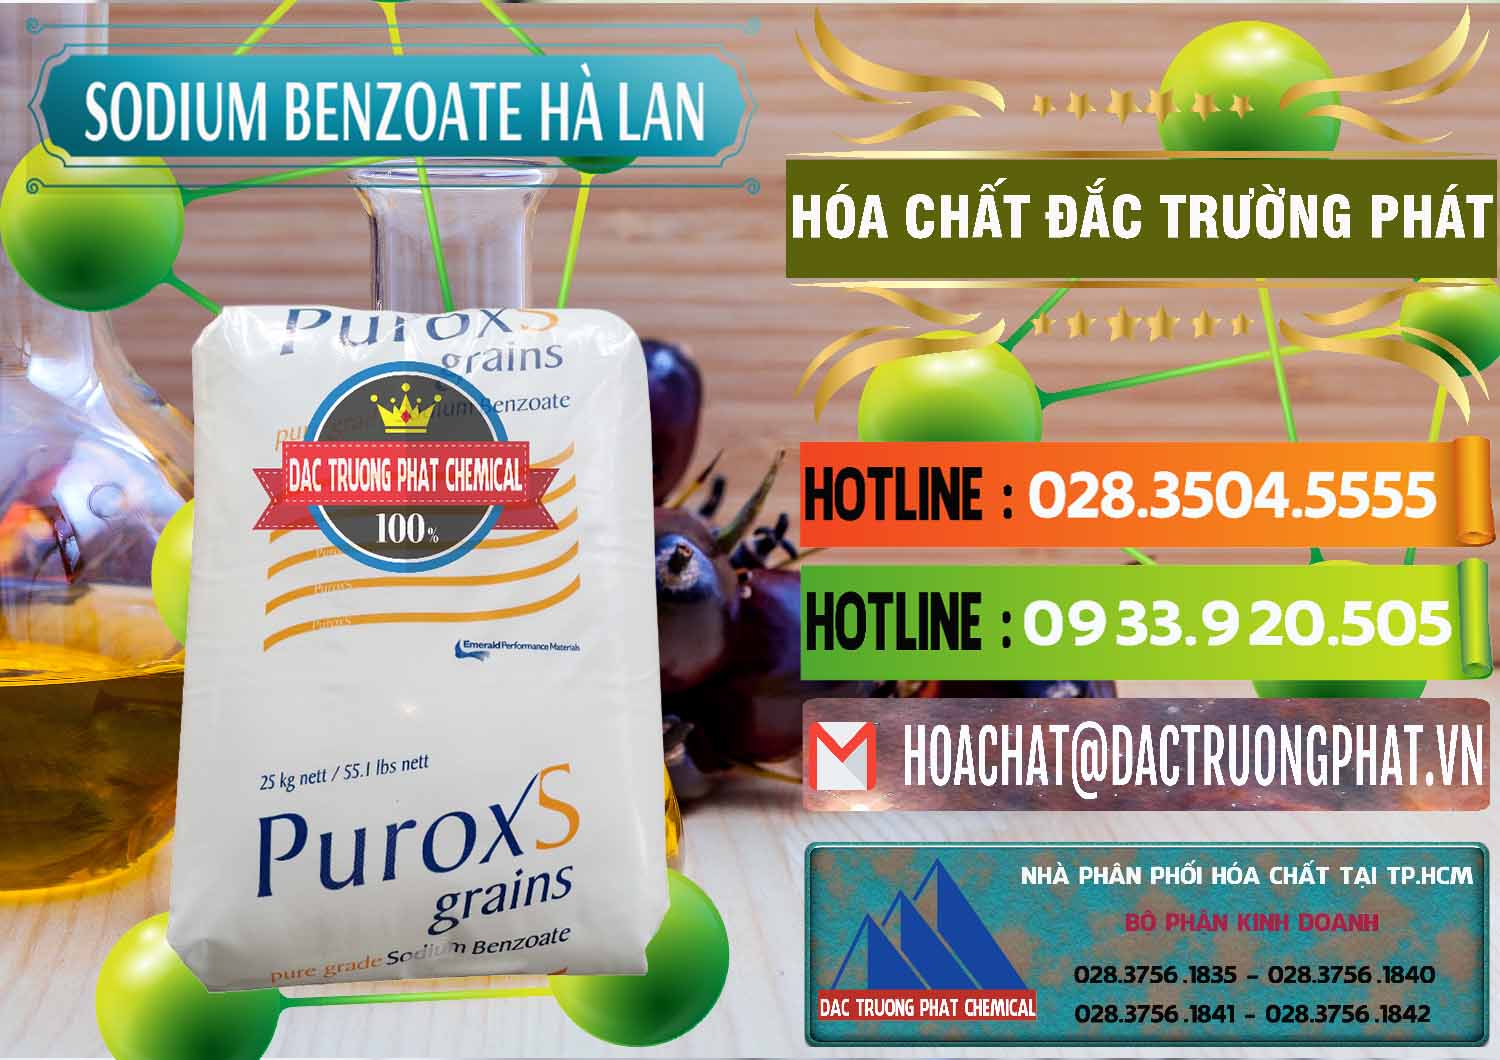 Cty cung cấp - bán Sodium Benzoate - Mốc Bột Puroxs Hà Lan Netherlands - 0467 - Cty cung cấp và kinh doanh hóa chất tại TP.HCM - cungcaphoachat.com.vn